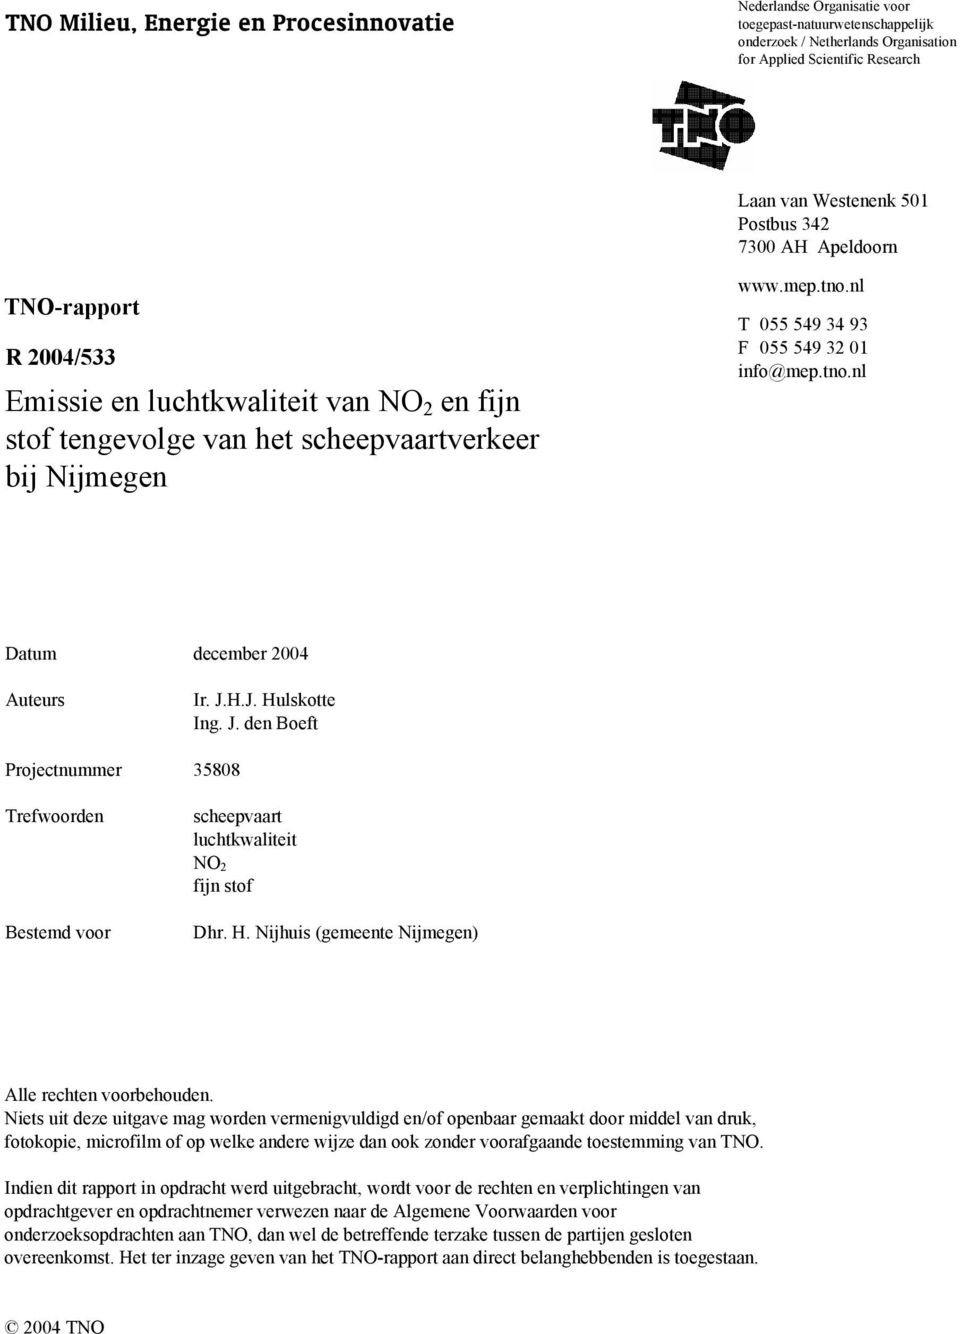 J.H.J. Hulskotte Ing. J. den Boeft Projectnummer 35808 Trefwoorden Bestemd voor scheepvaart luchtkwaliteit NO 2 fijn stof Dhr. H. Nijhuis (gemeente Nijmegen) Alle rechten voorbehouden.